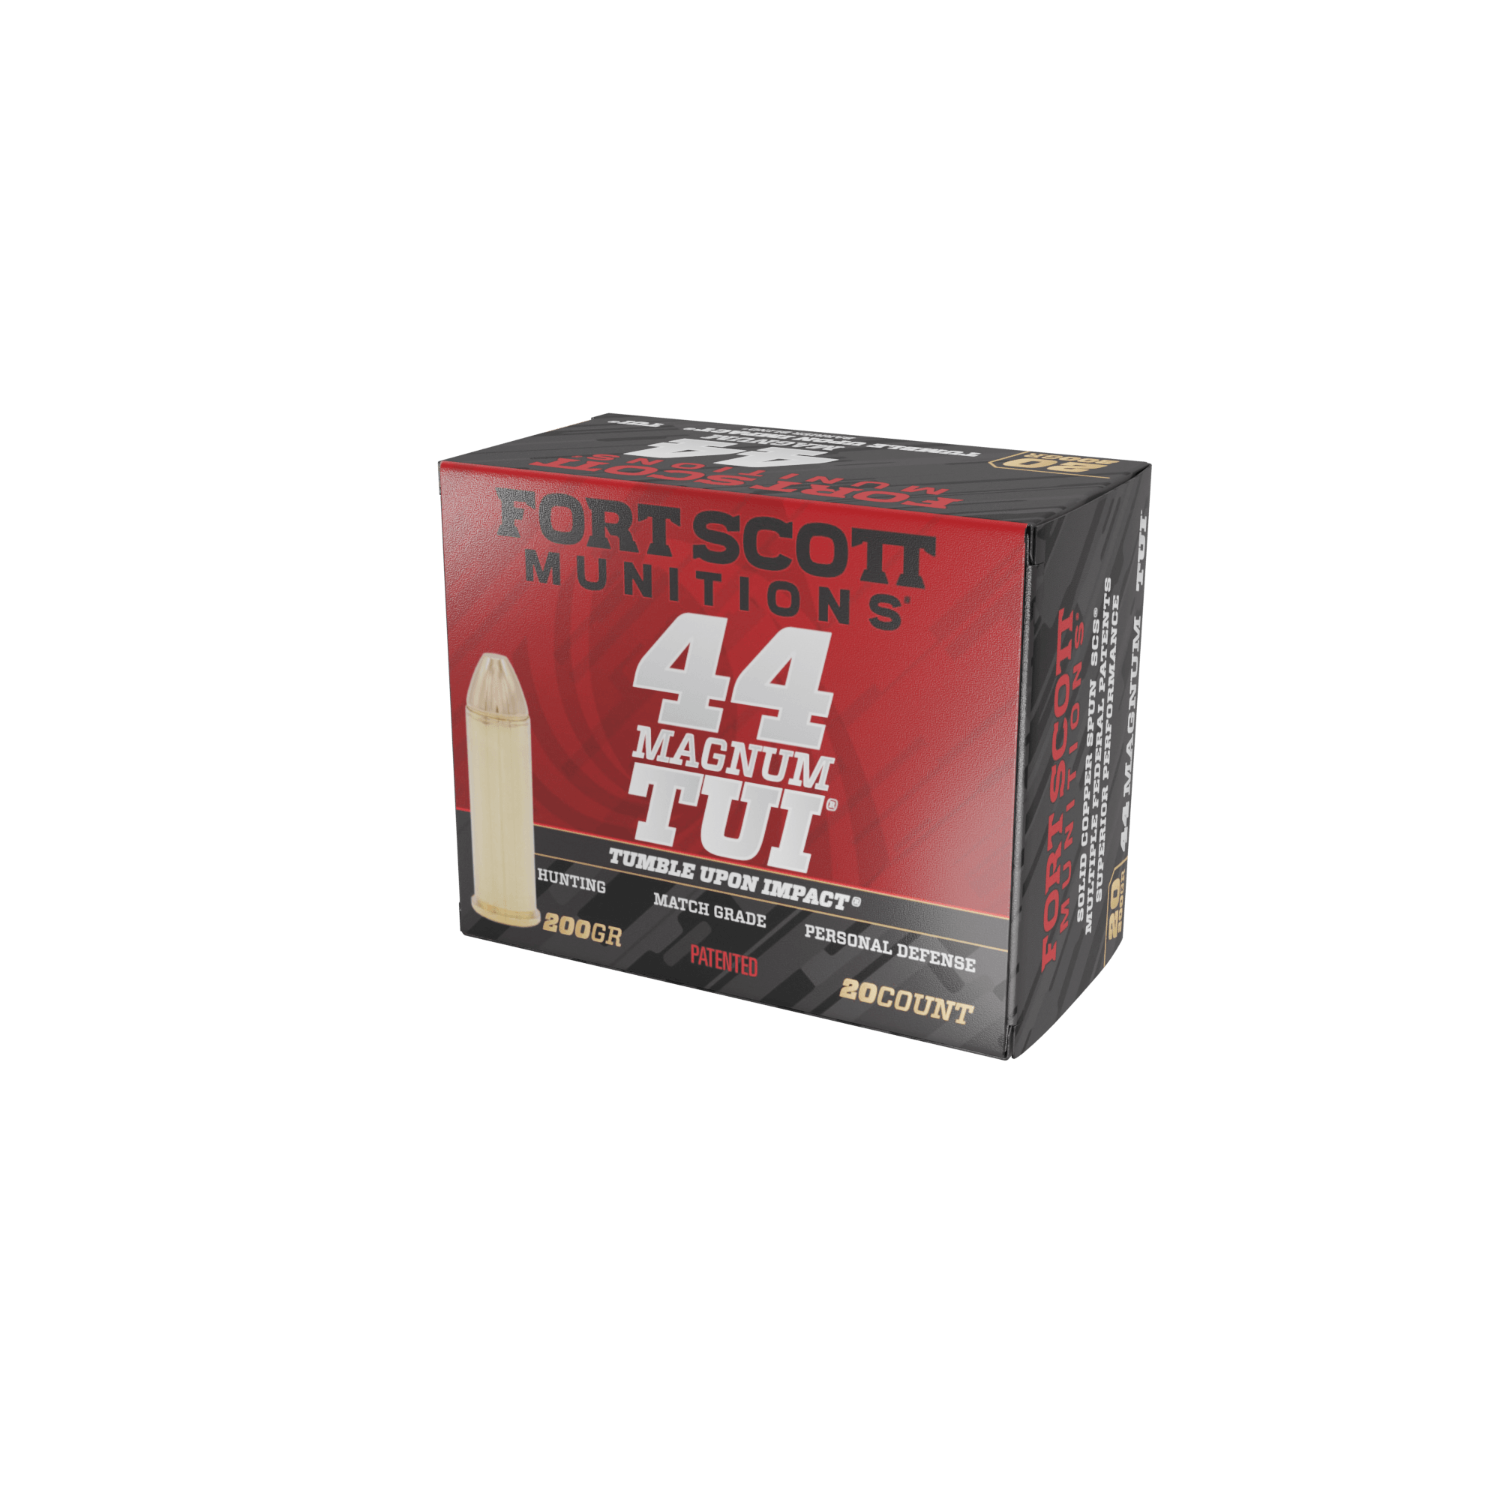 Fort Scott 44 Magnum TUI - Ammo, 20 Count, .44 Magnum